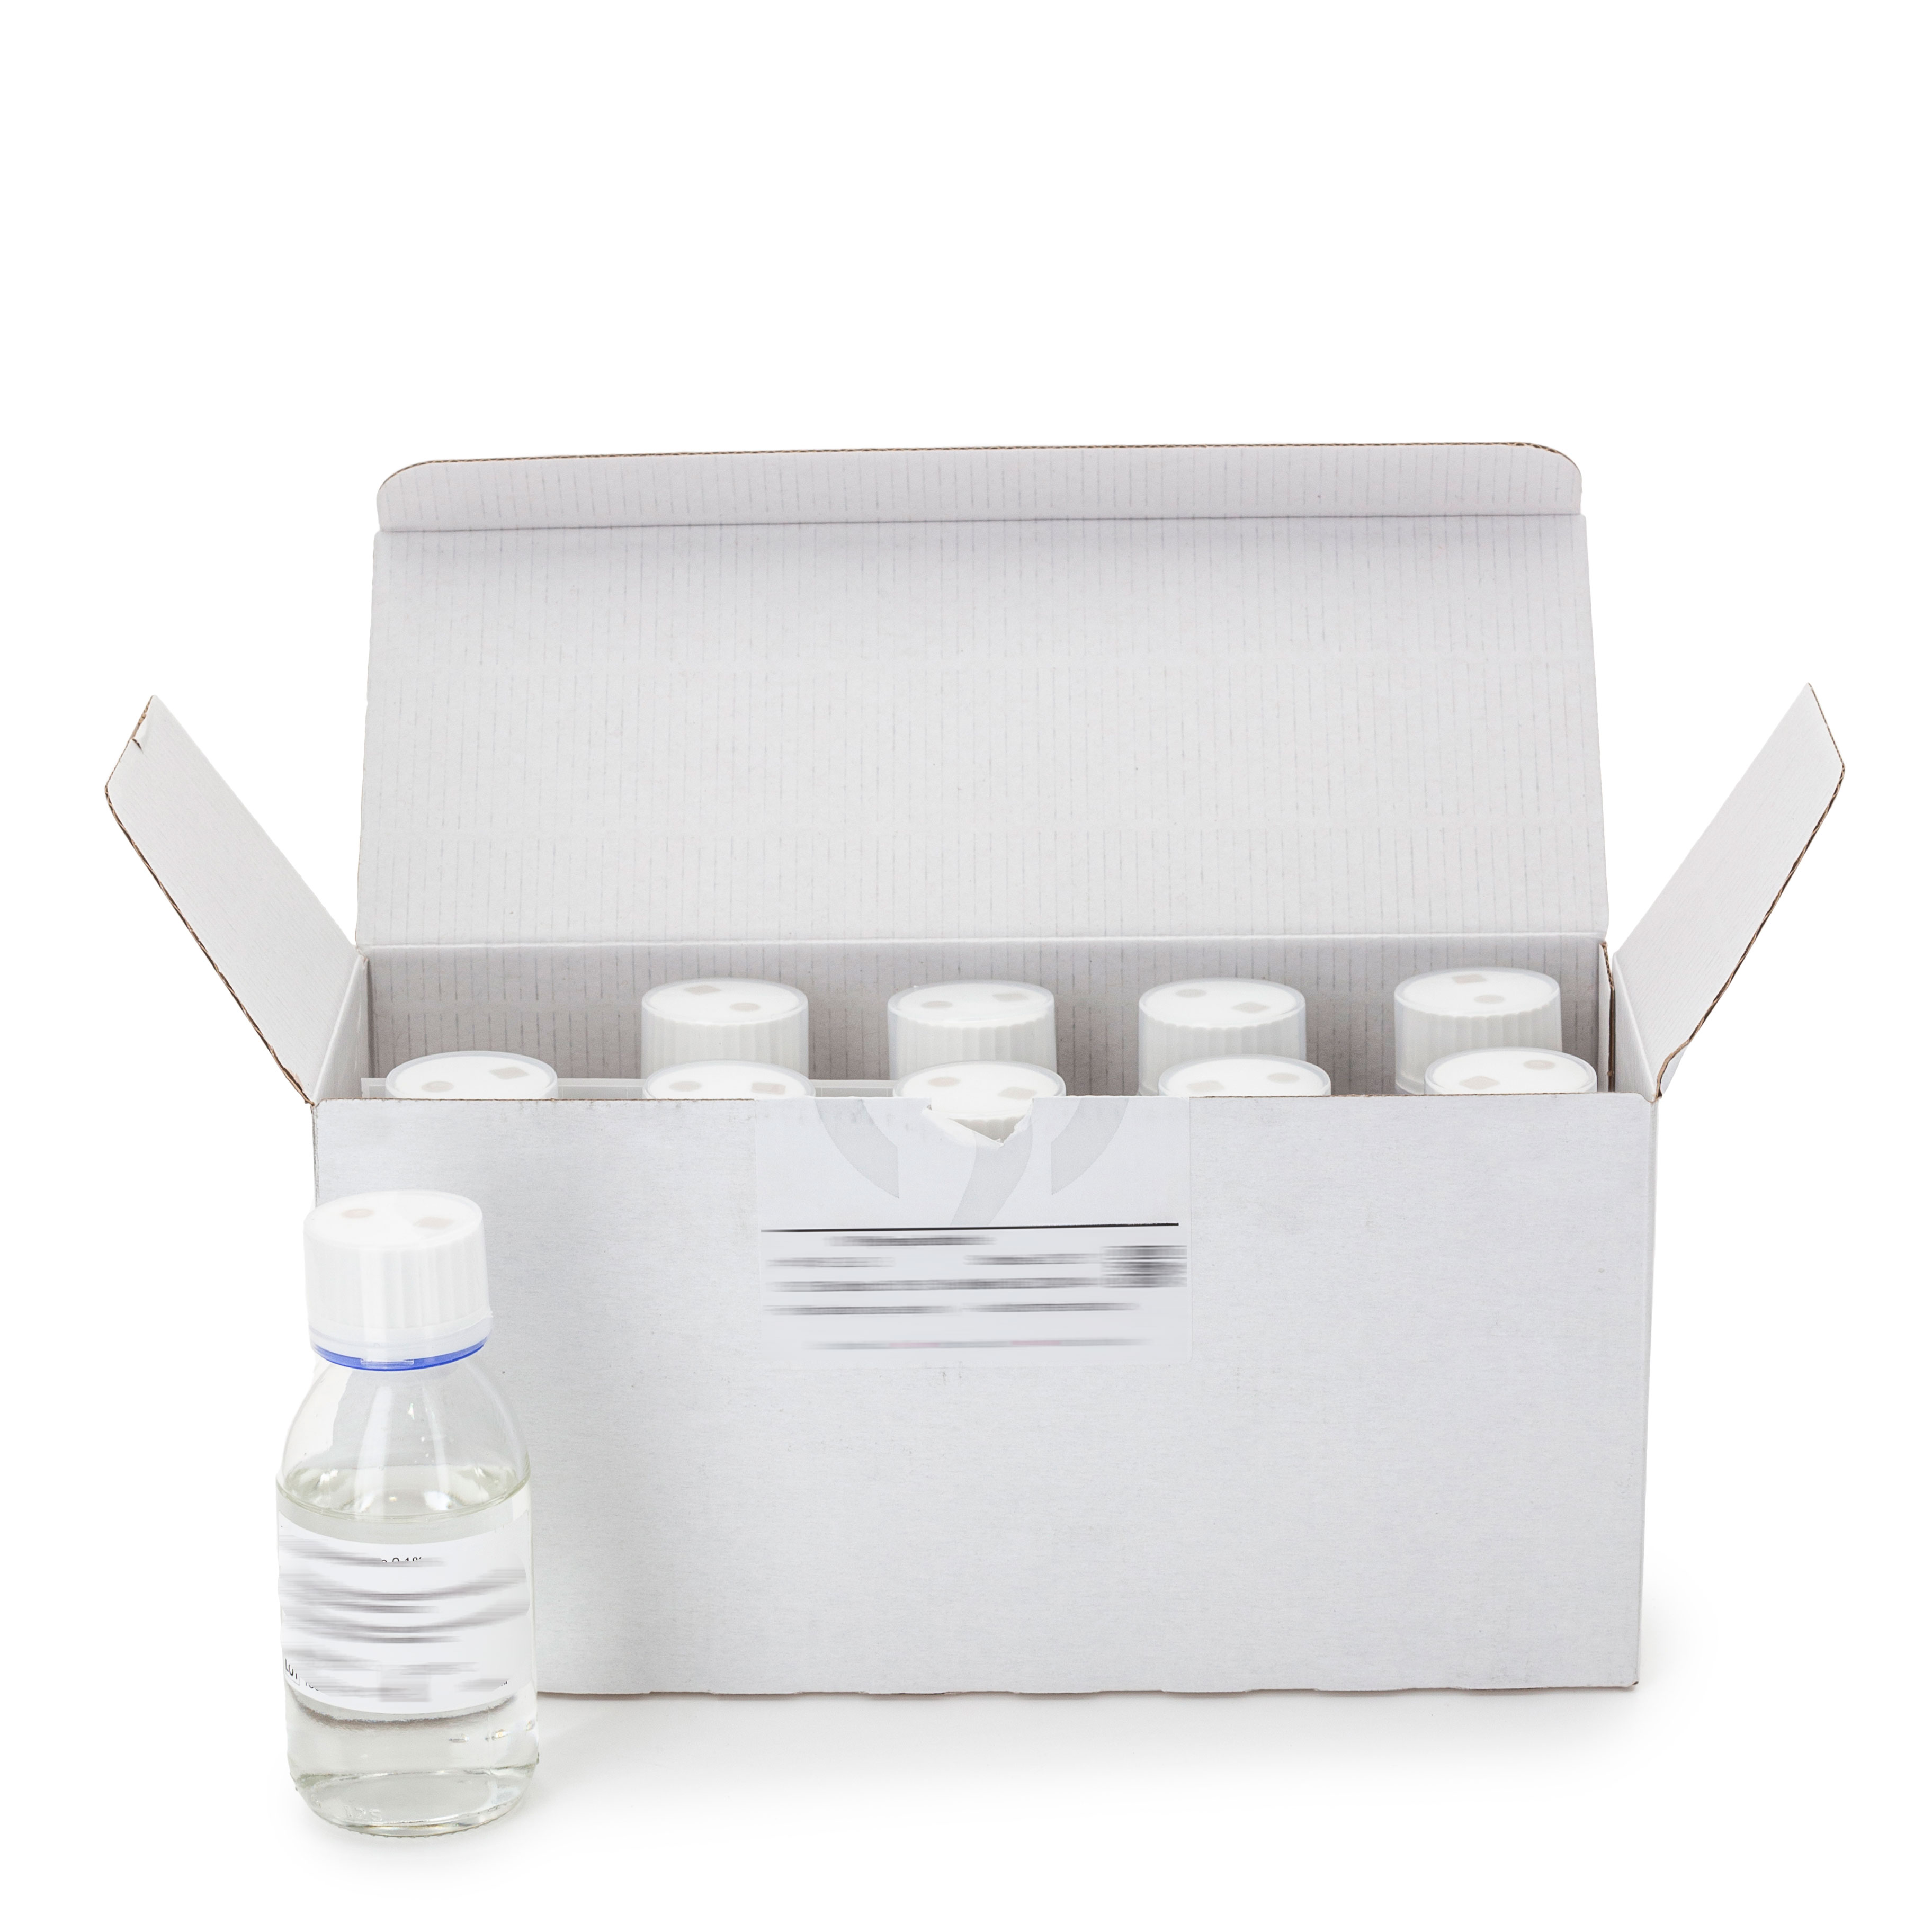 Eugon LT Modified Broth - 90 ml. Medio líquido para el enriquecimiento de bacterias aeróbicas y E. coli, en productos cosméticos en presencia o ausencia de conservantes.